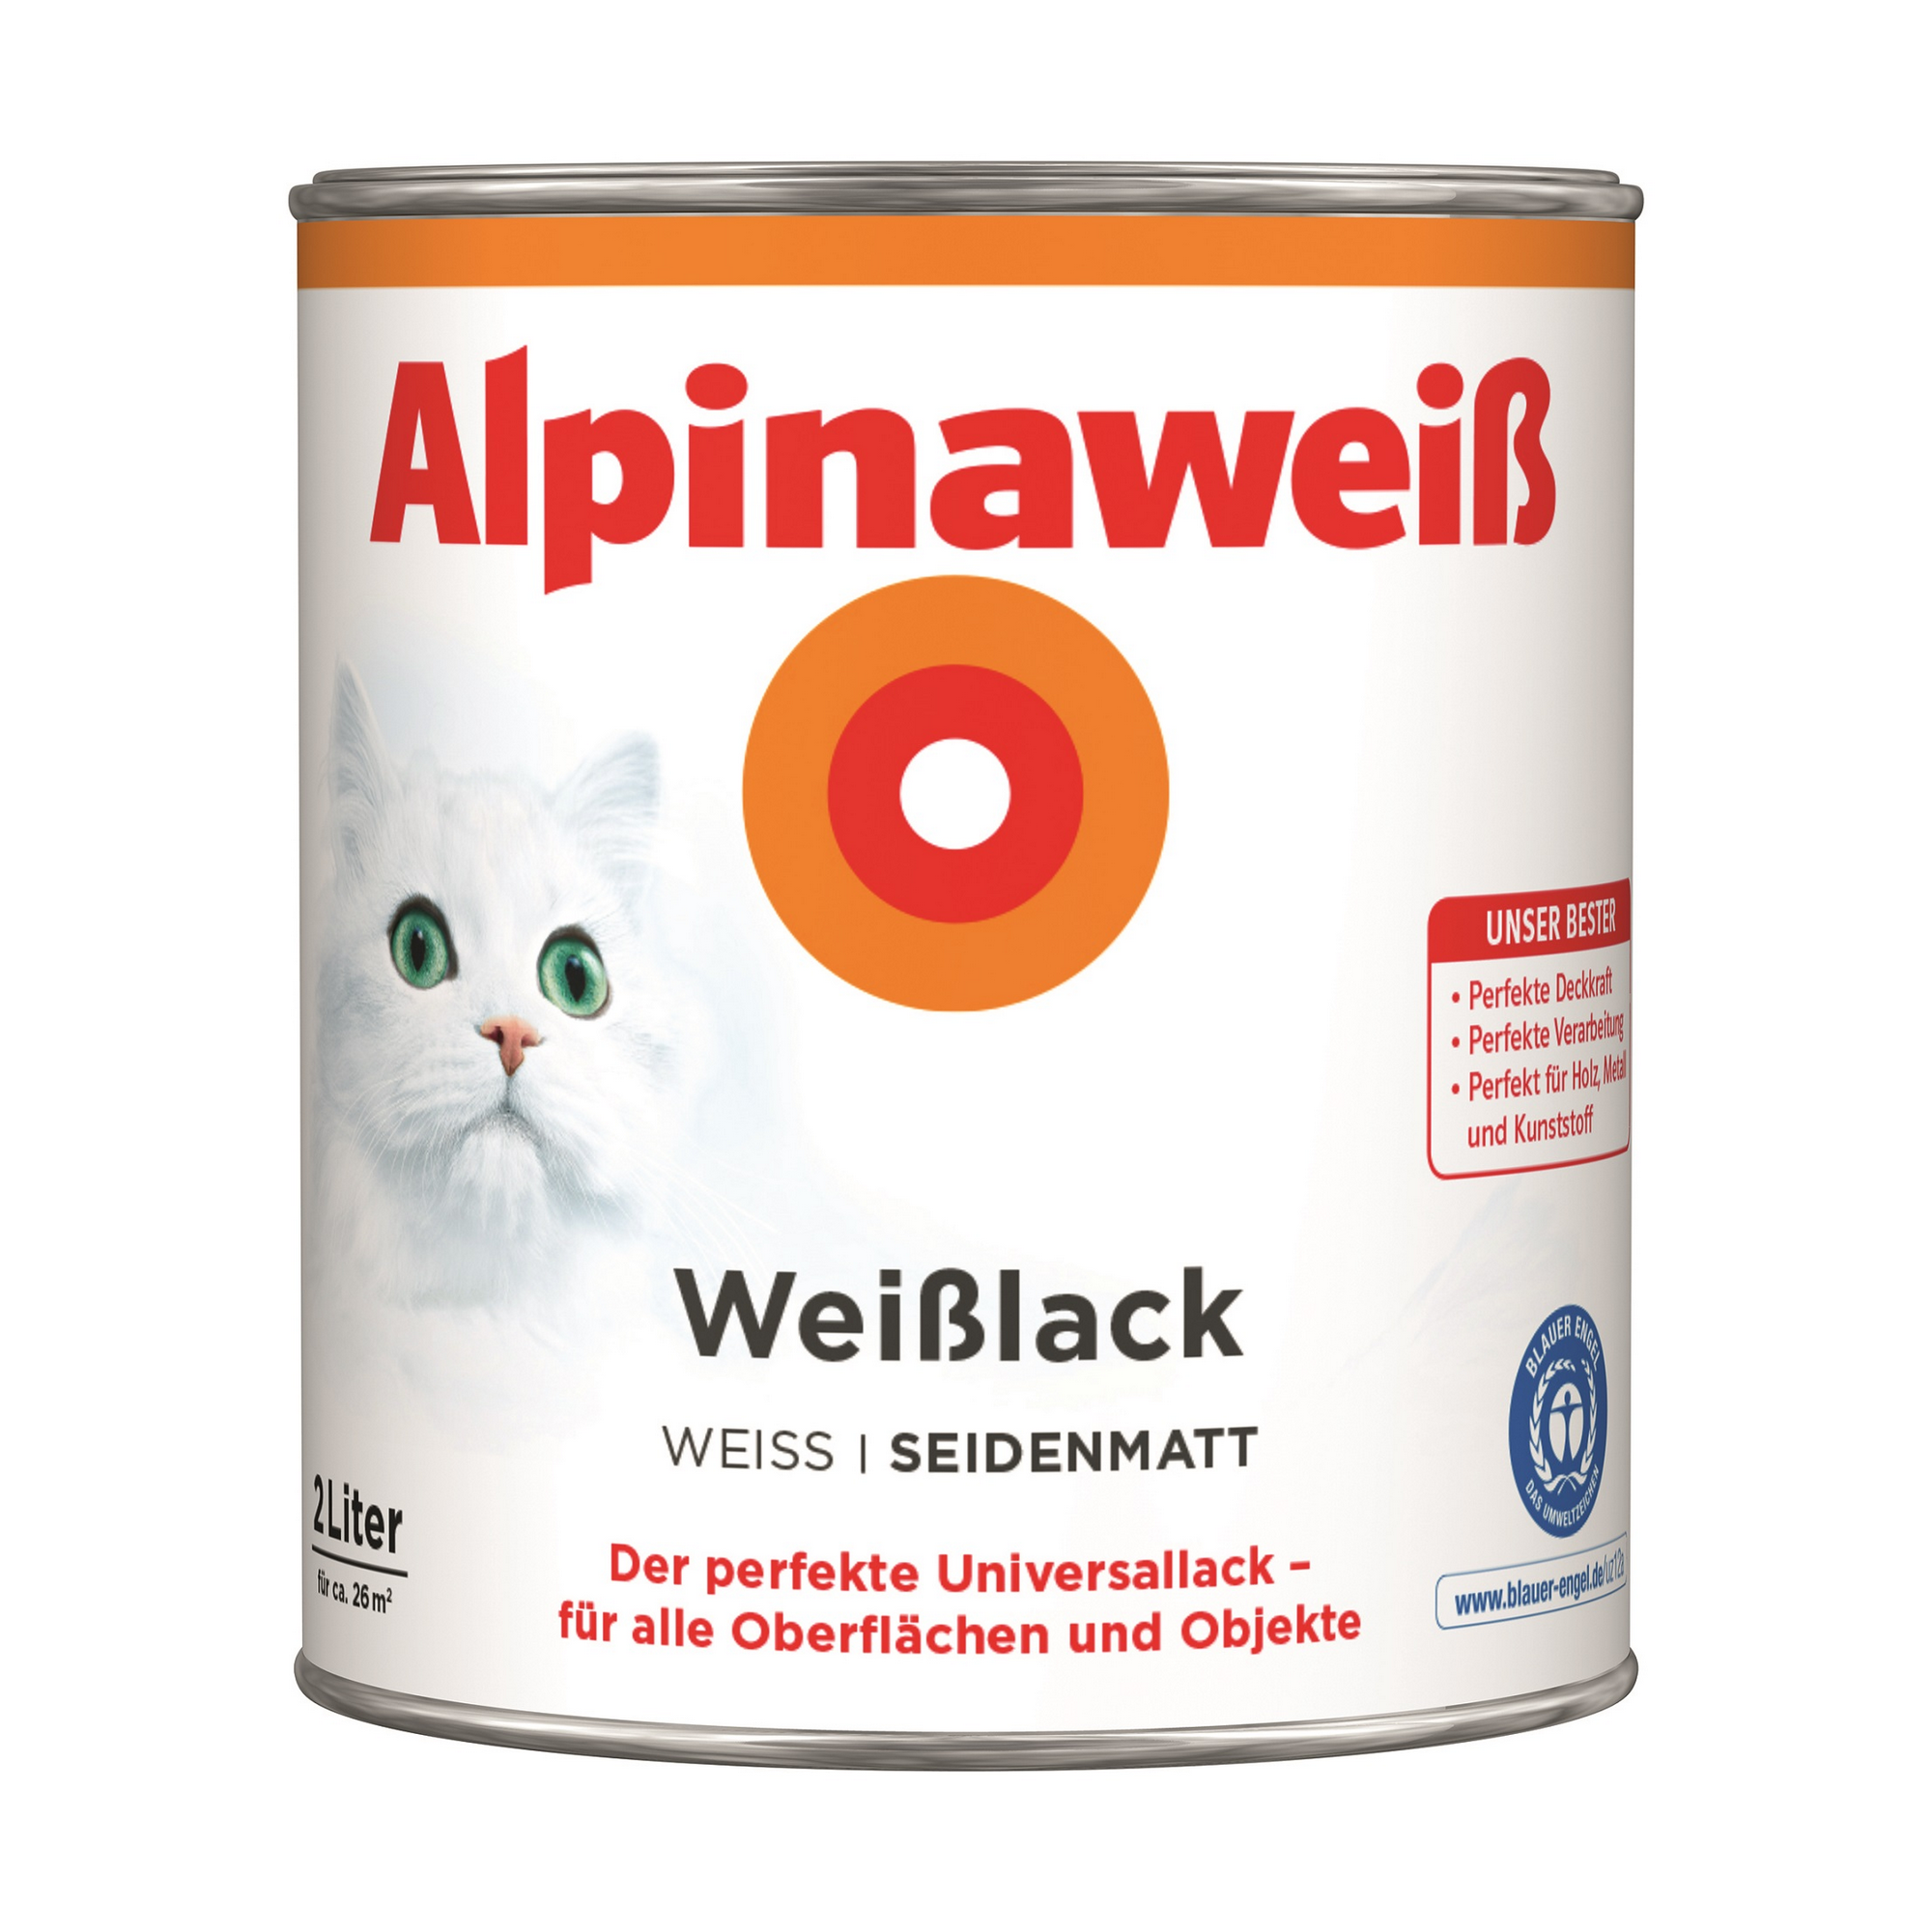 Weißlack 'Alpinaweiß' seidenmatt 2 l + product picture